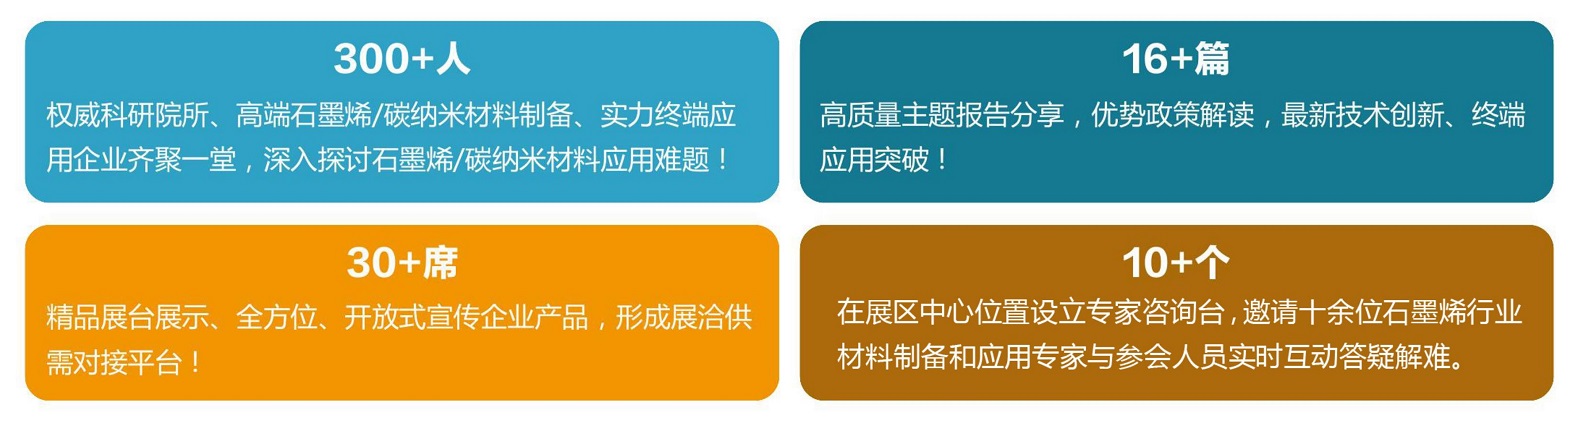 上海烯望材料科技有限公司将联合主办“2019（第五届）石墨烯/碳纳米材料制备技术及终端应用创新论坛”